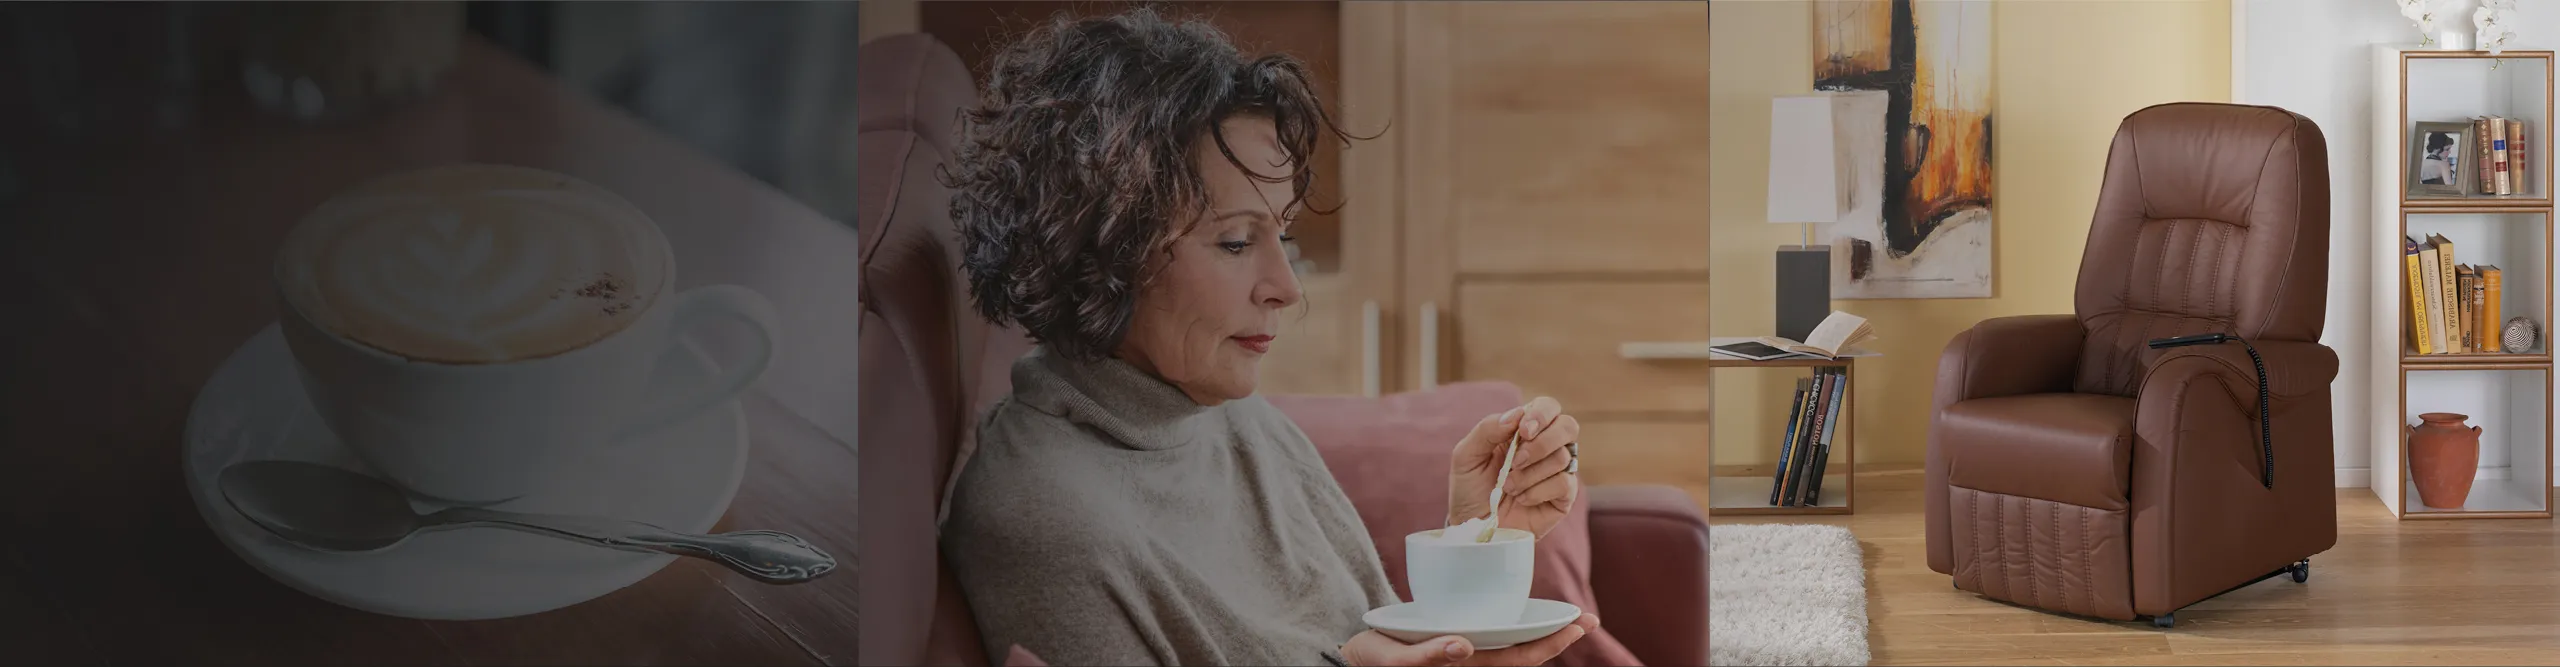 Frau sitzt im Sessel und trinkt eine Tasse Kafee, Tasse Kaffee mit Foamart auf edlem Holztisch, Brauner Ledersessel im Wohnzimmer